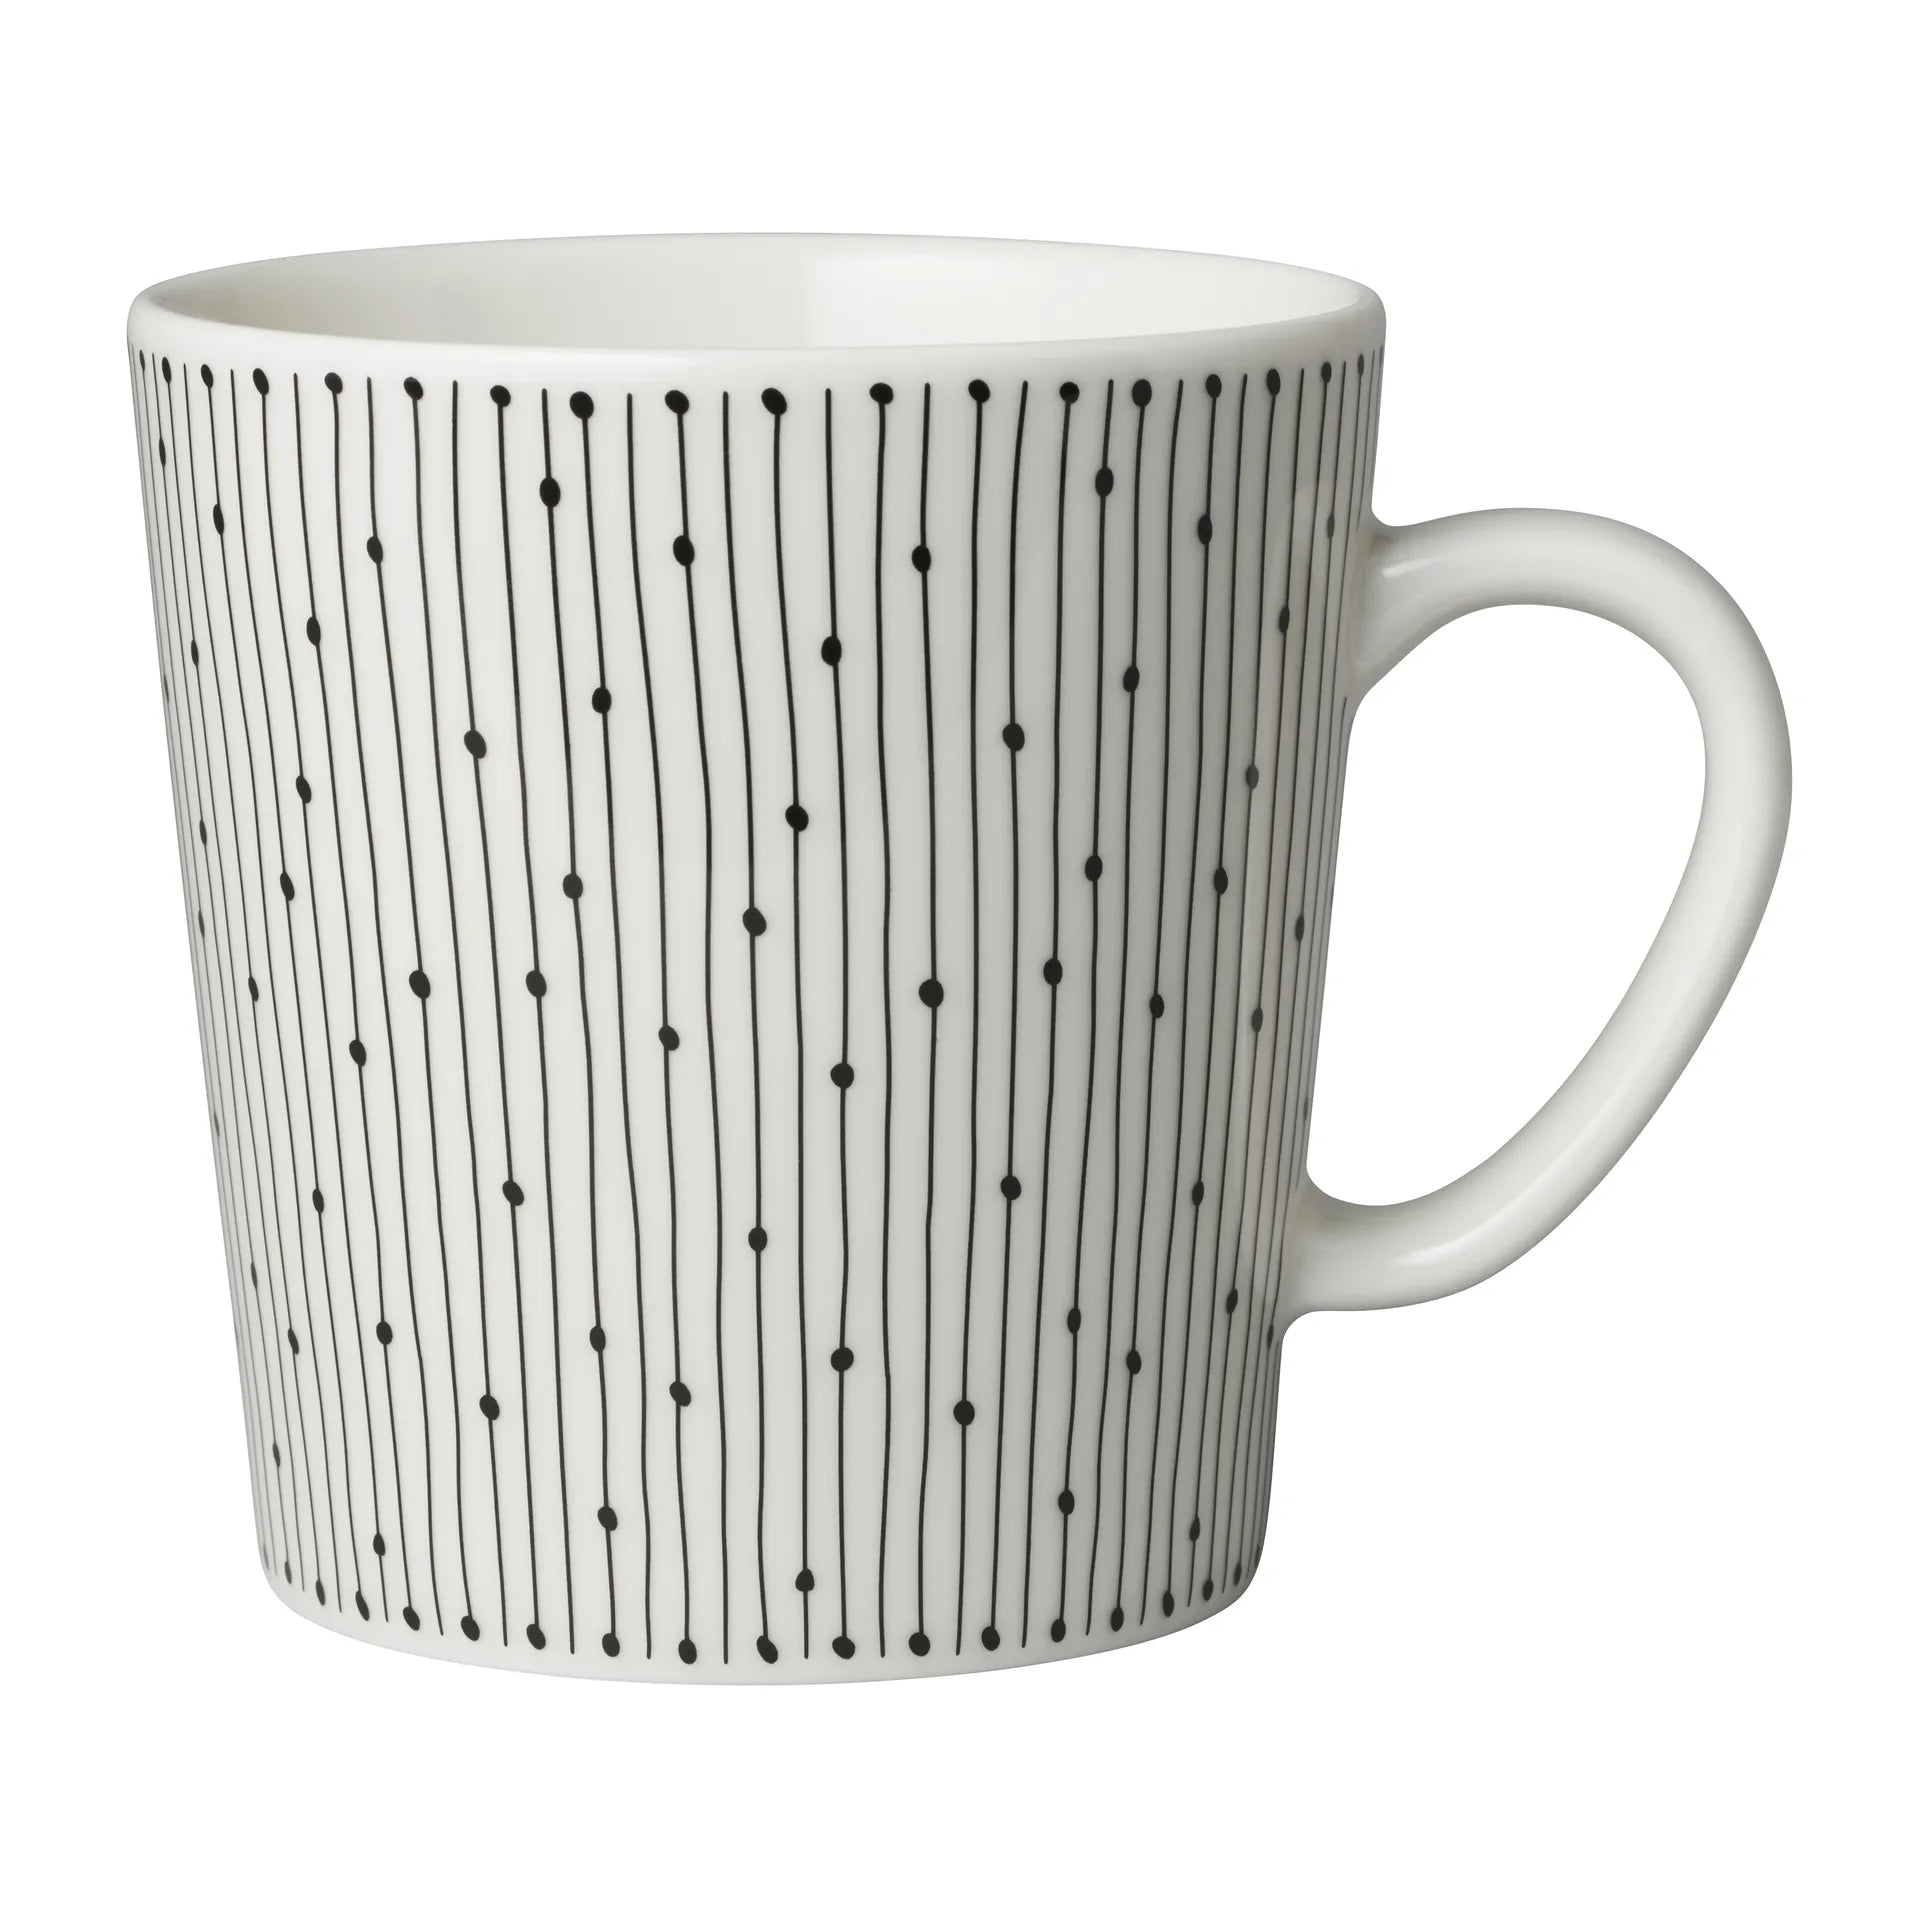 Mainio Sarastus mug 30 cl - Black-white